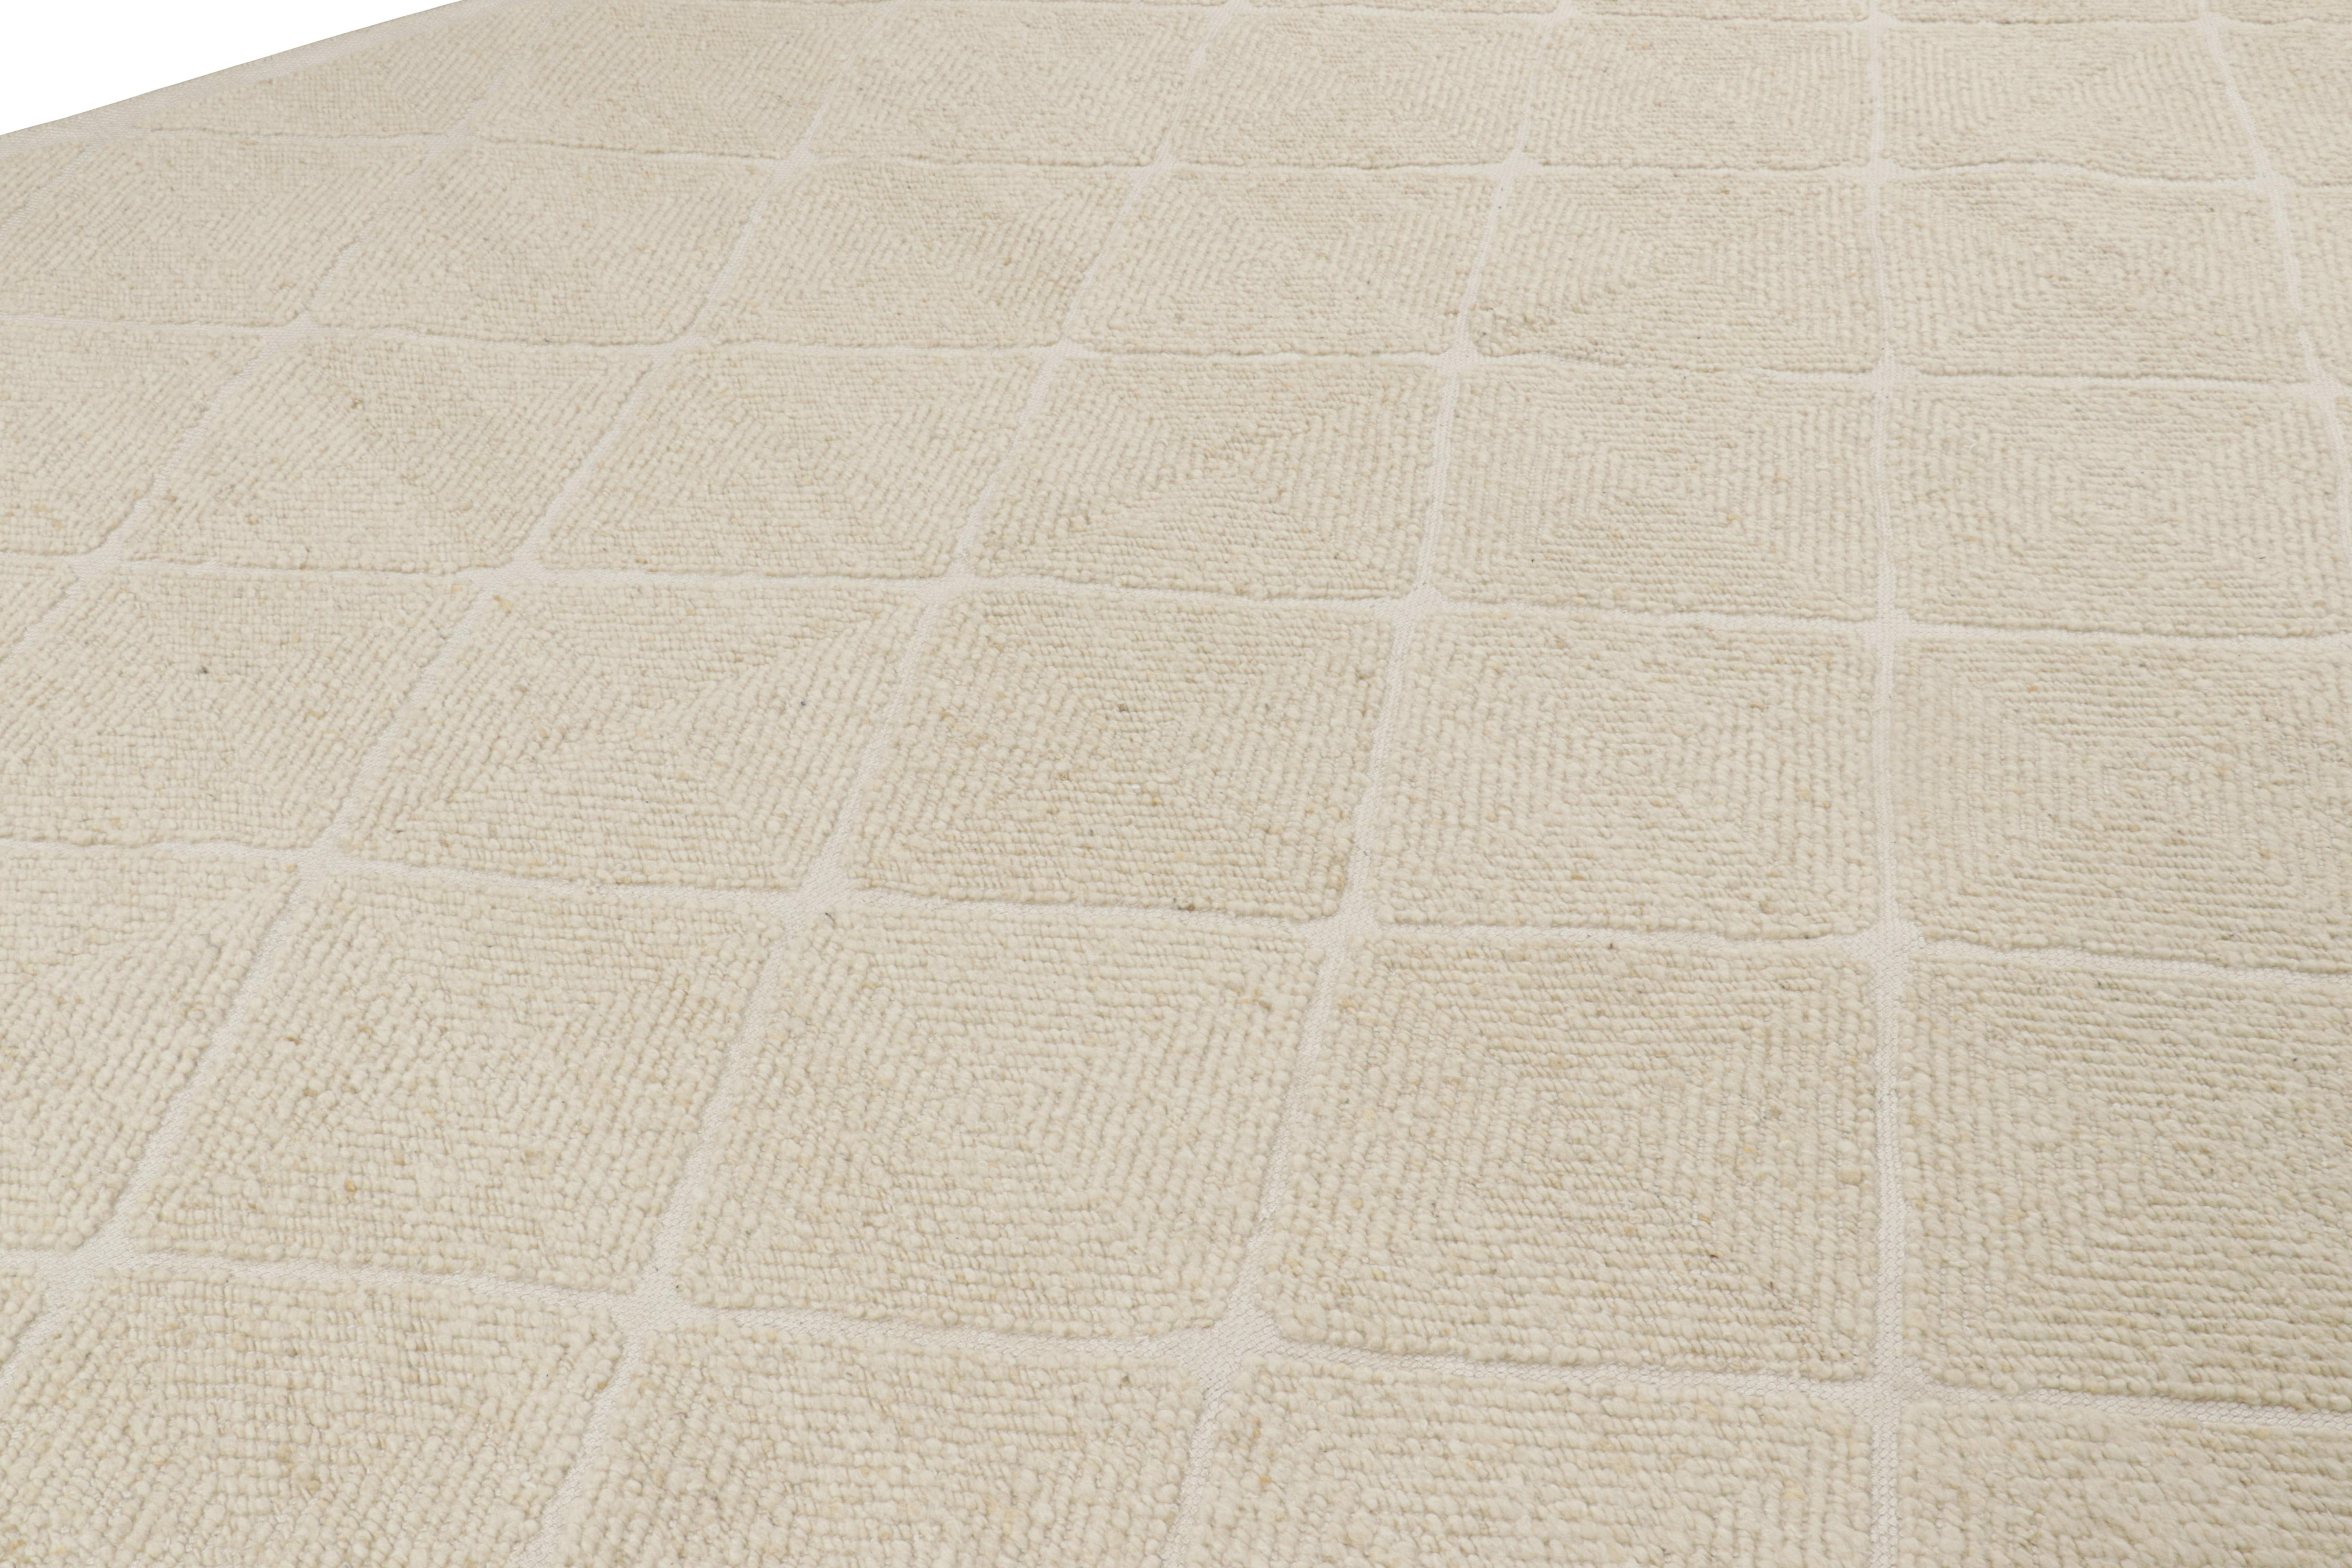 Ce tapis 10x14 d'inspiration suédoise, tissé à la main en laine, est issu de la texture inventive 